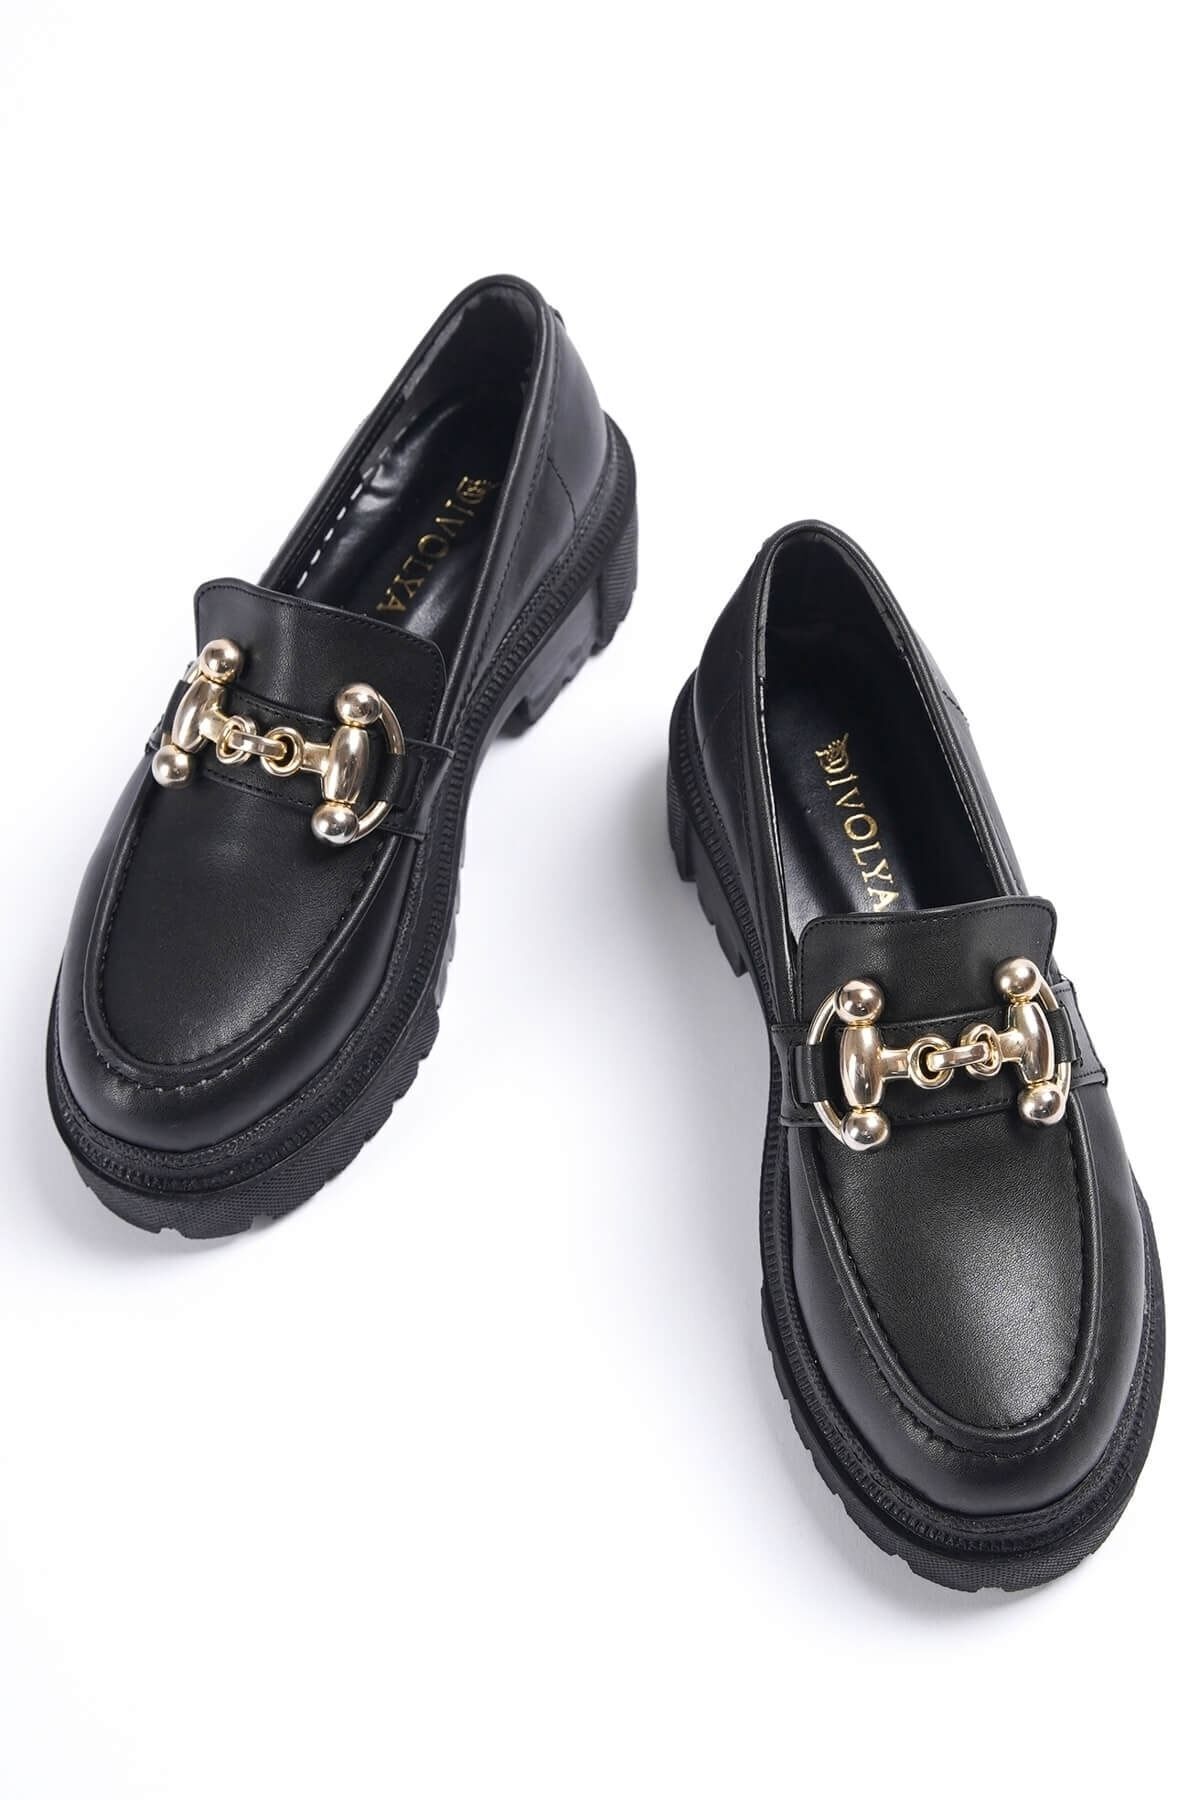 diya shoes Oxford Laofer Ayakkabı Tokalı Günlük Ortapetik Iç Tabanlık Primamit Beyaz